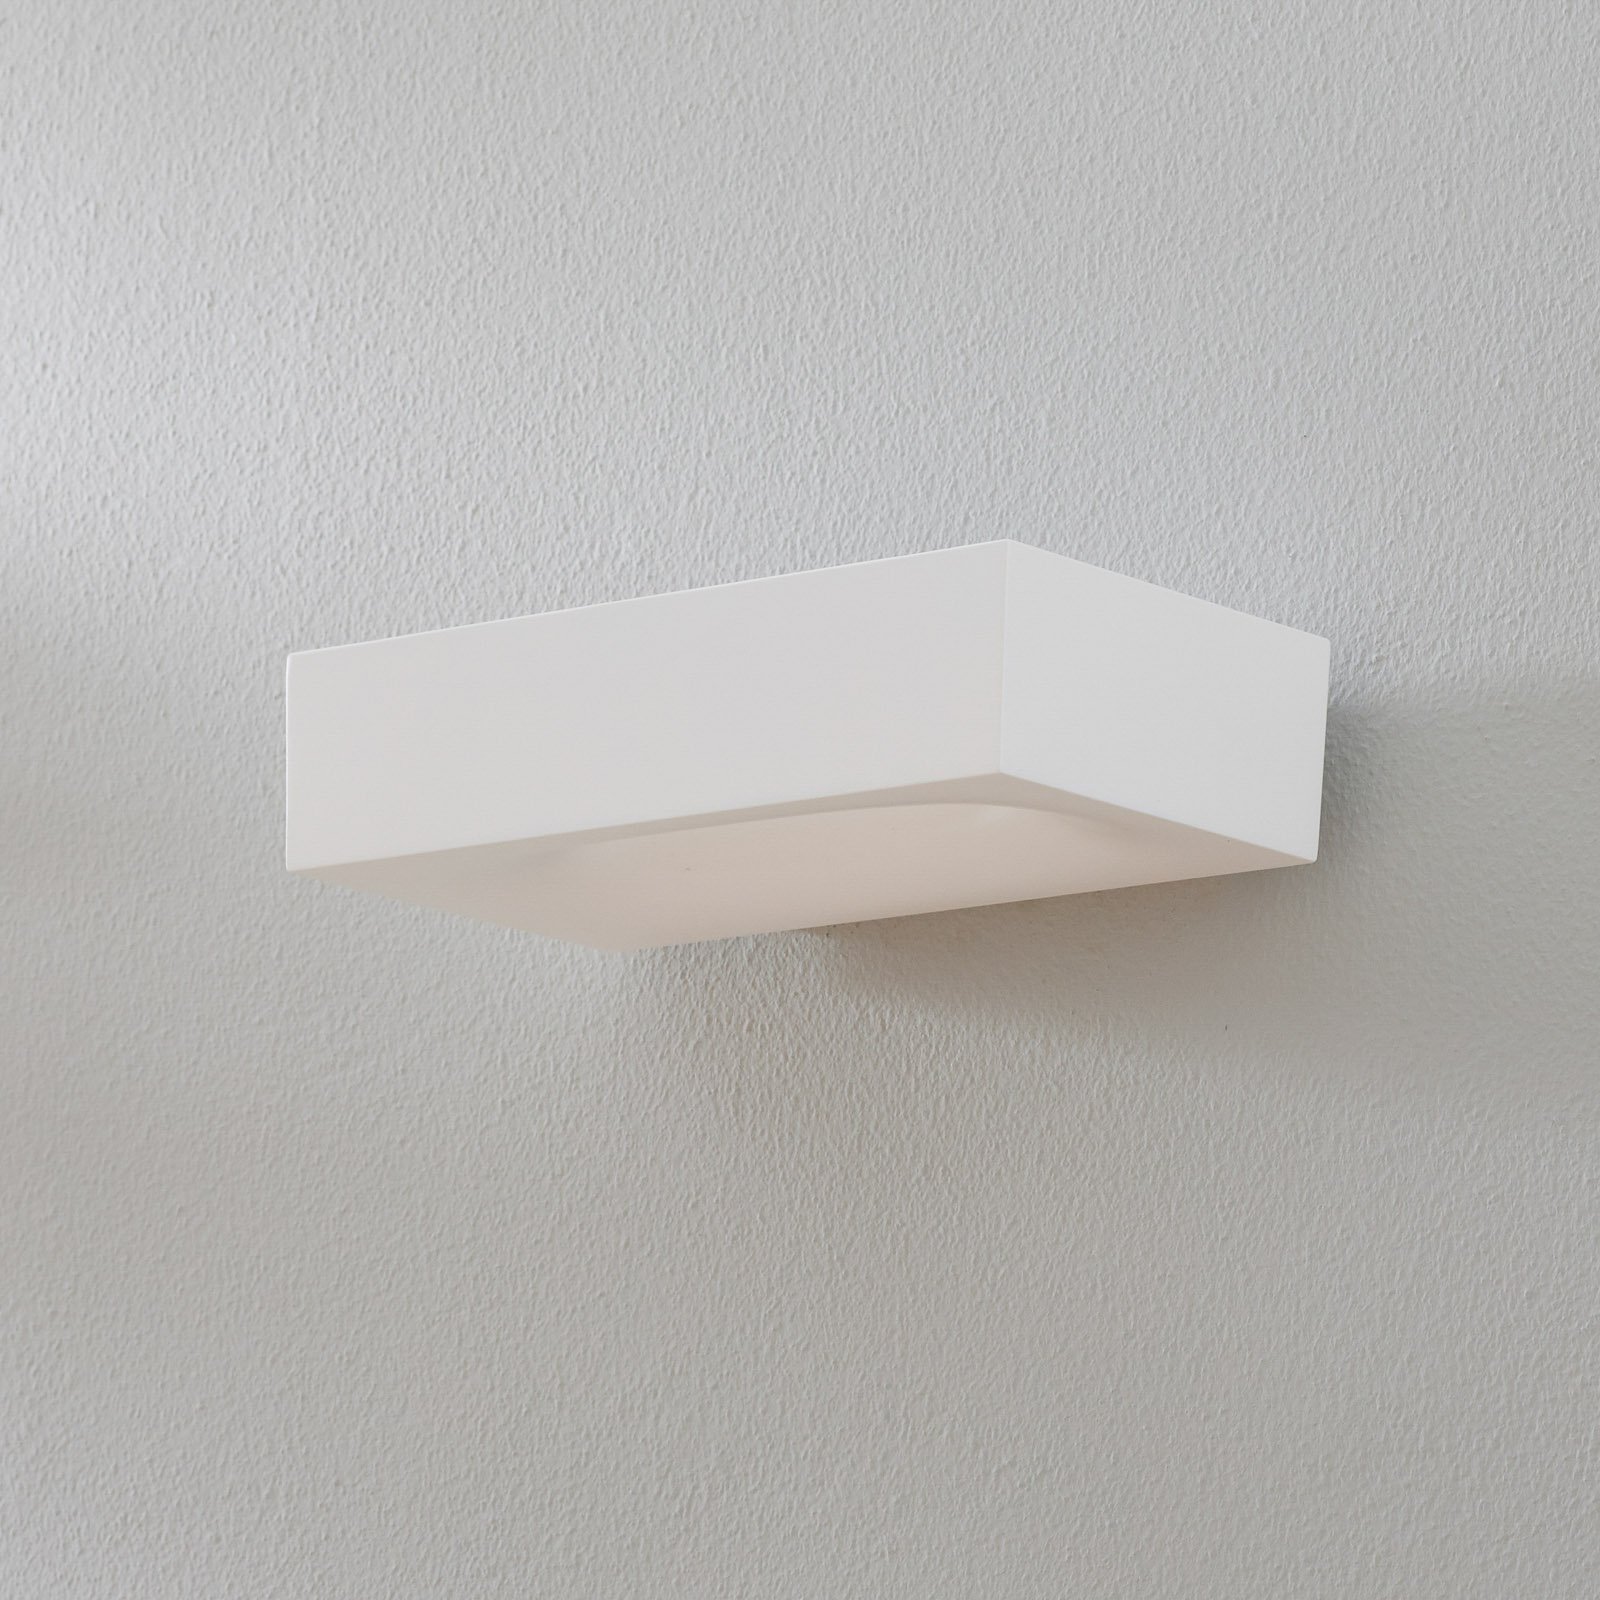 Melete white LED wall light, 2,700 K